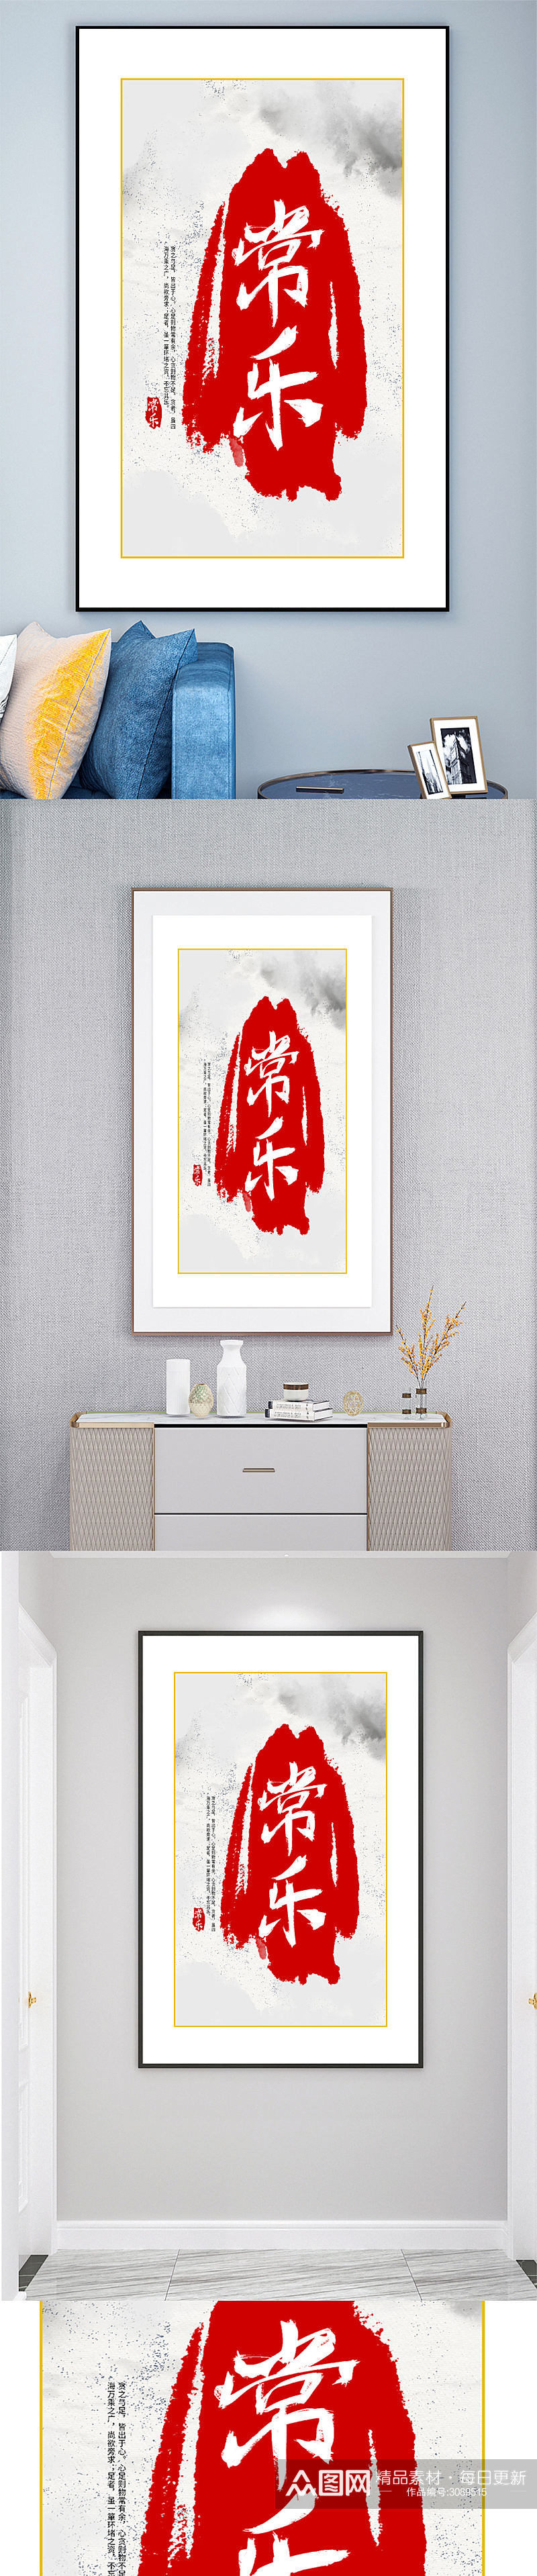 中式简约文字装饰画壁画素材